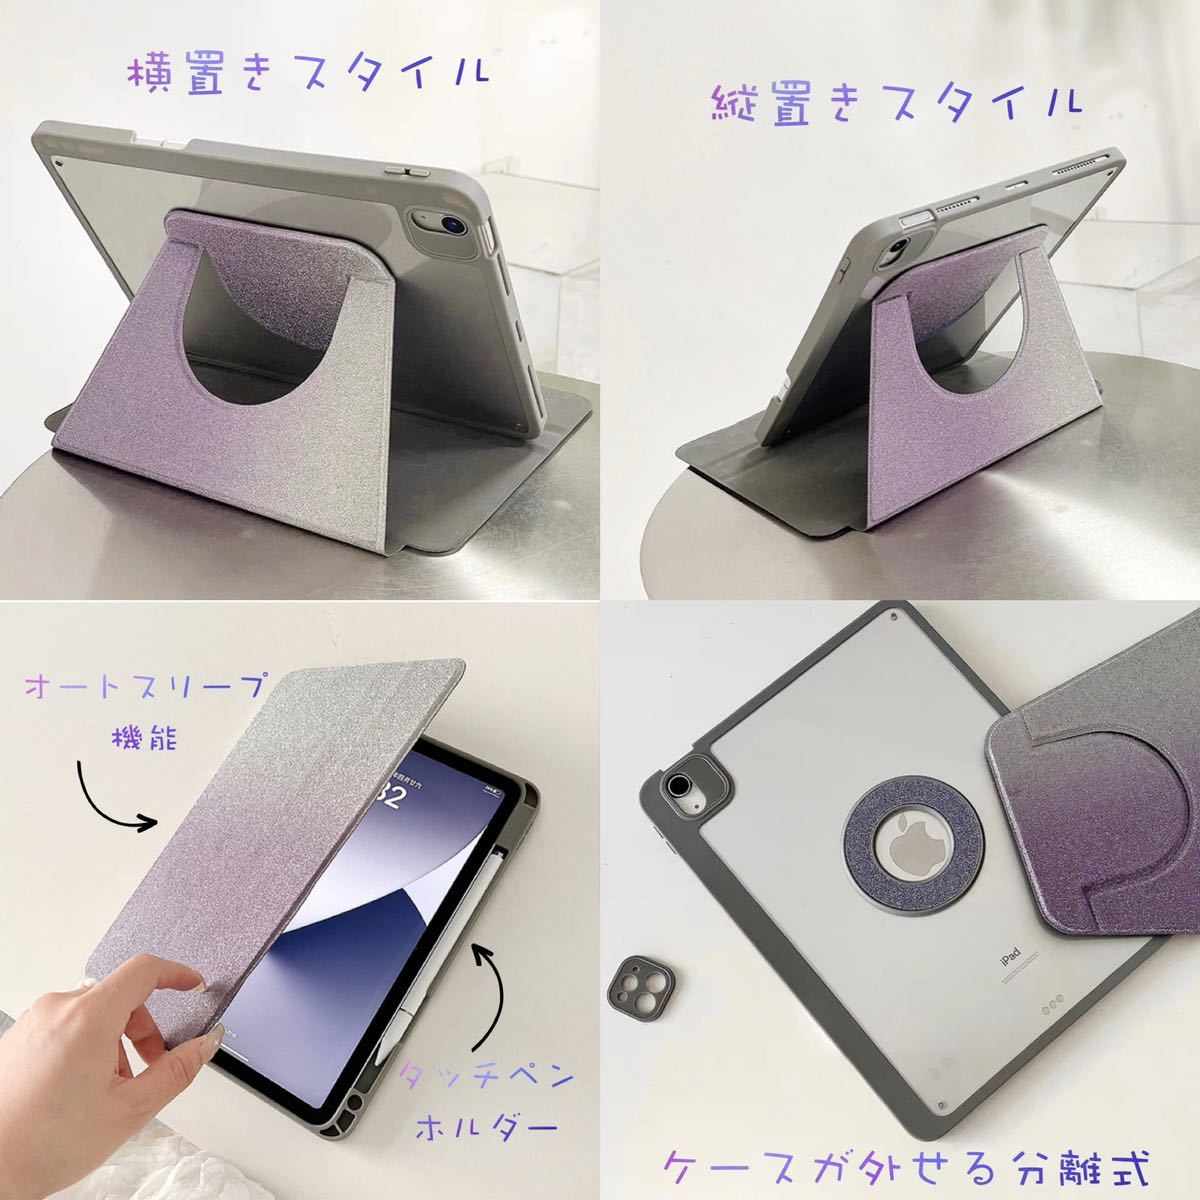 iPadケース 分離 ラメ入り お得なマットフィルムセット iPadカバー 縦置き ラメ 取り外し 縦 スマートカバー スマートケース 10.2 10.5 紫